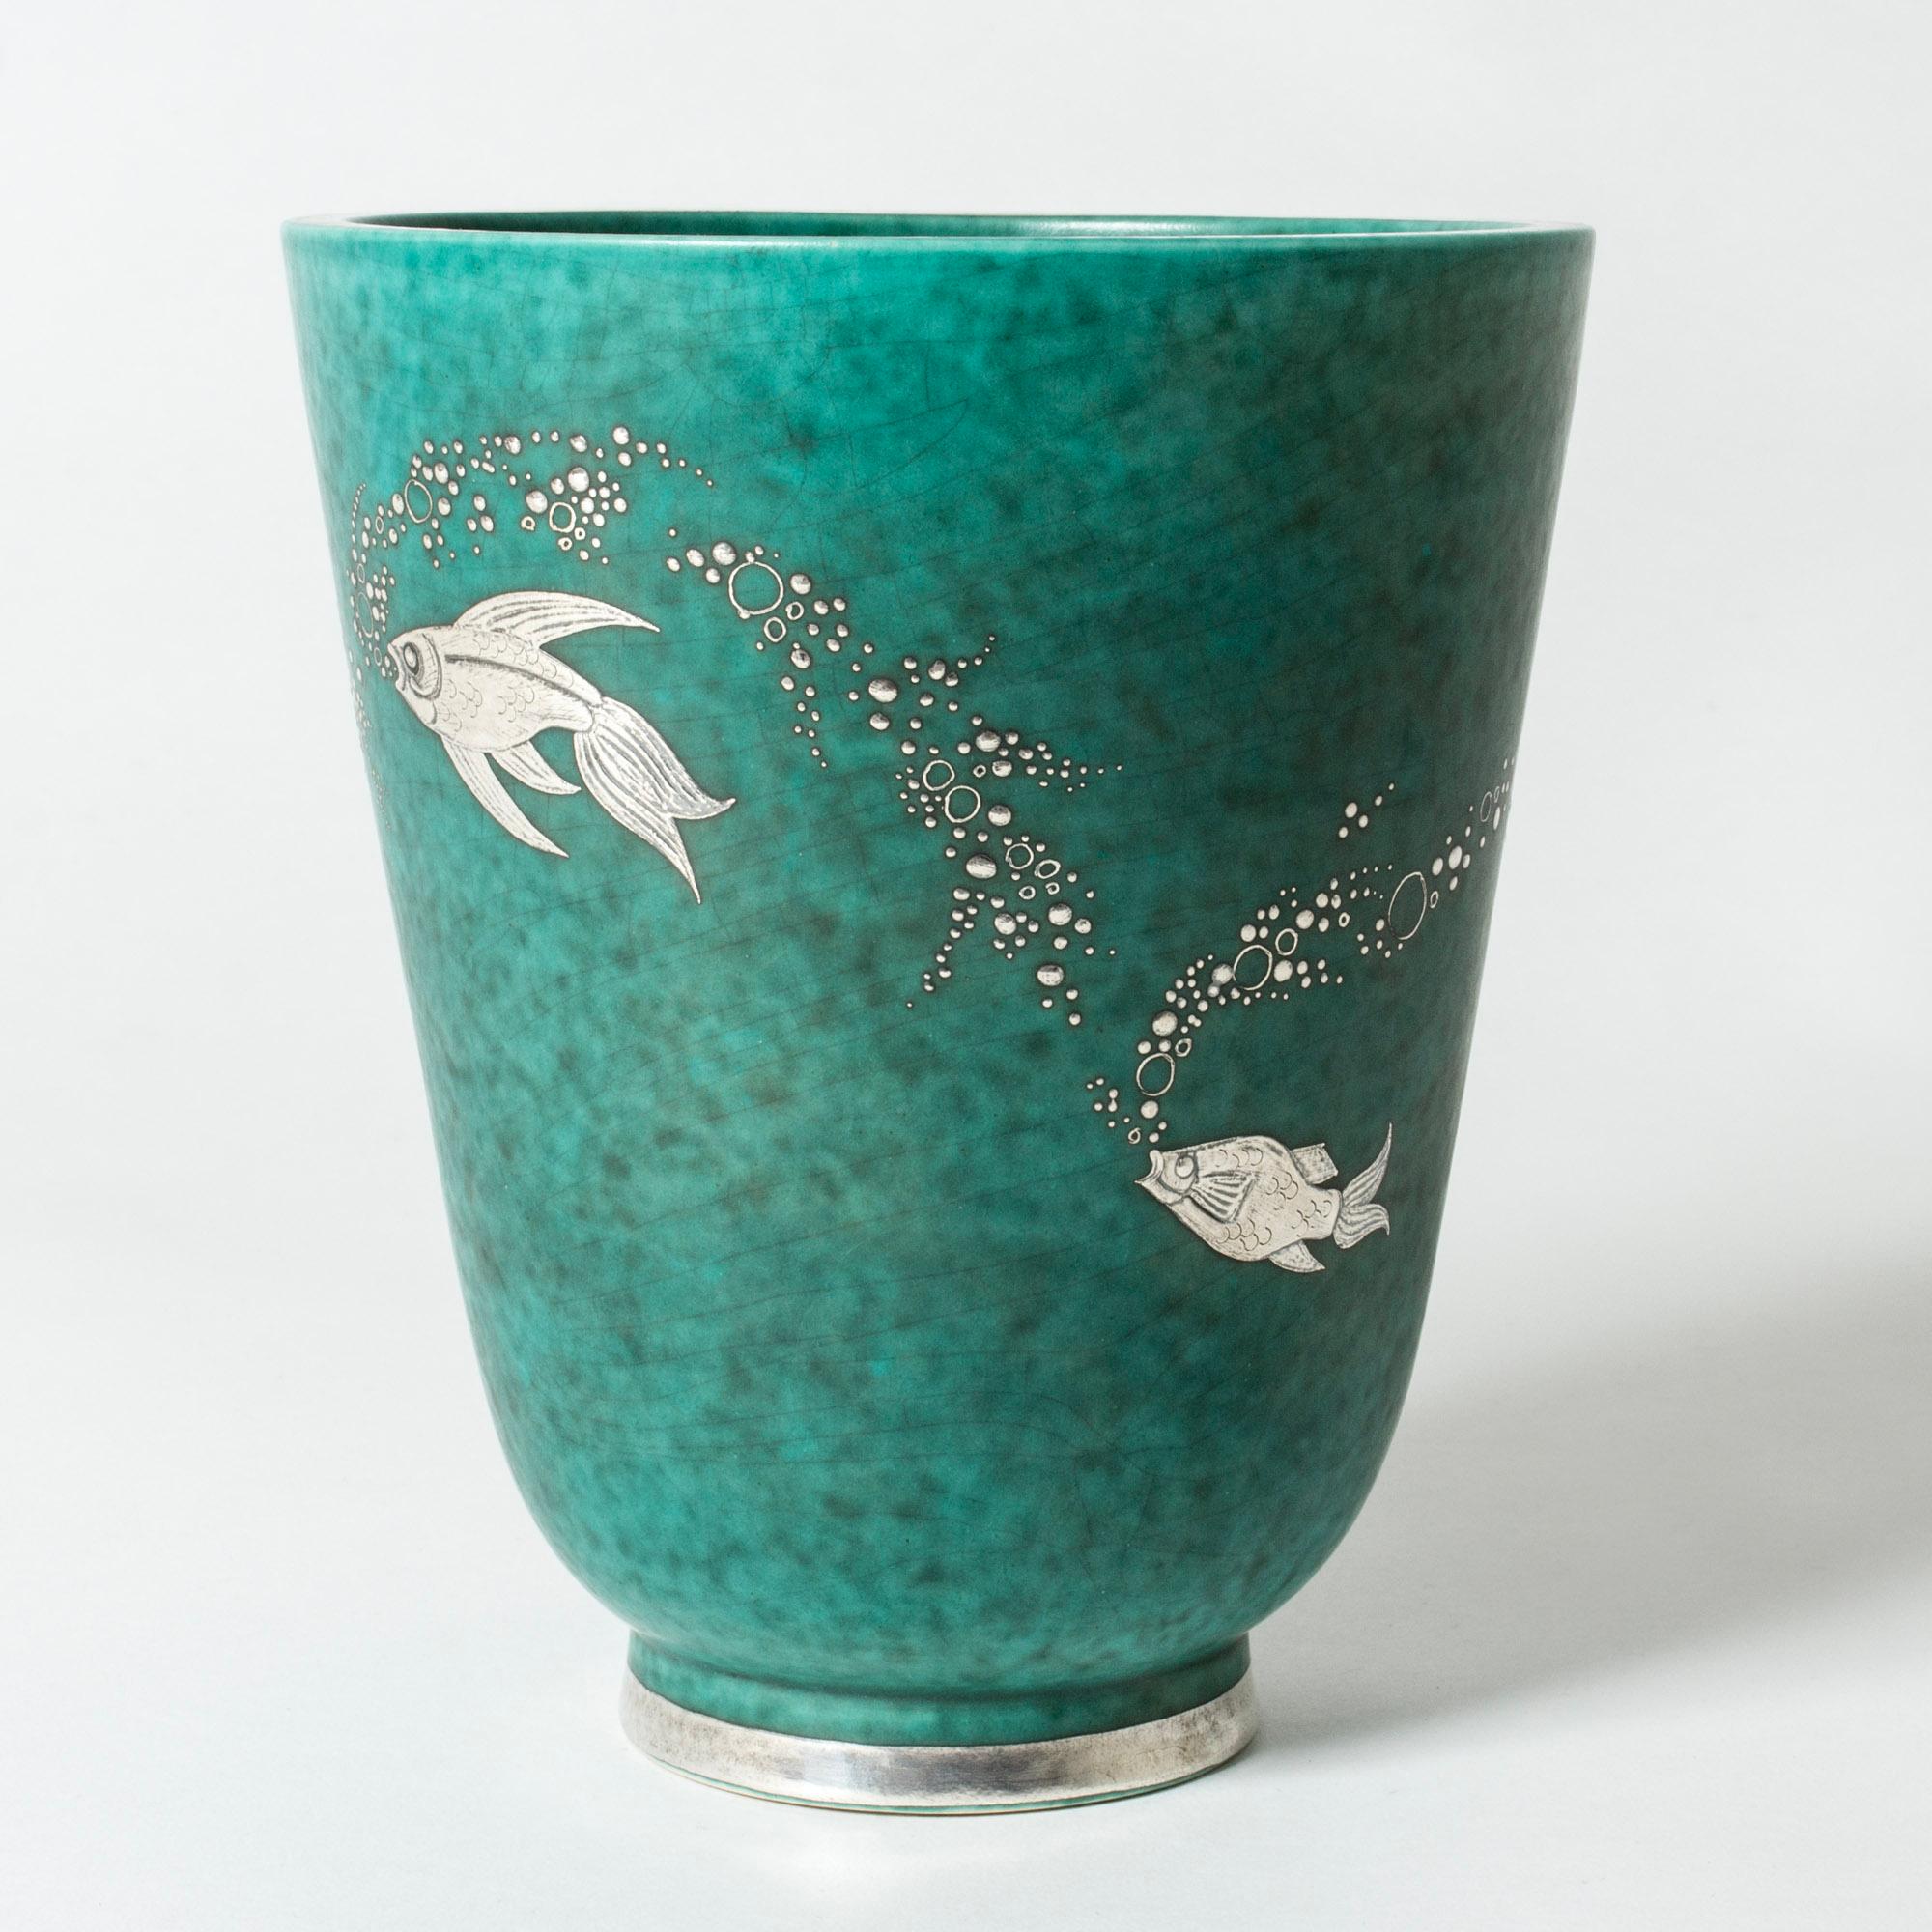 Scandinavian Modern Midcentury Stoneware “Argenta” Vase by Wilhelm Kåge, Gustavsberg, Sweden, 1940s For Sale